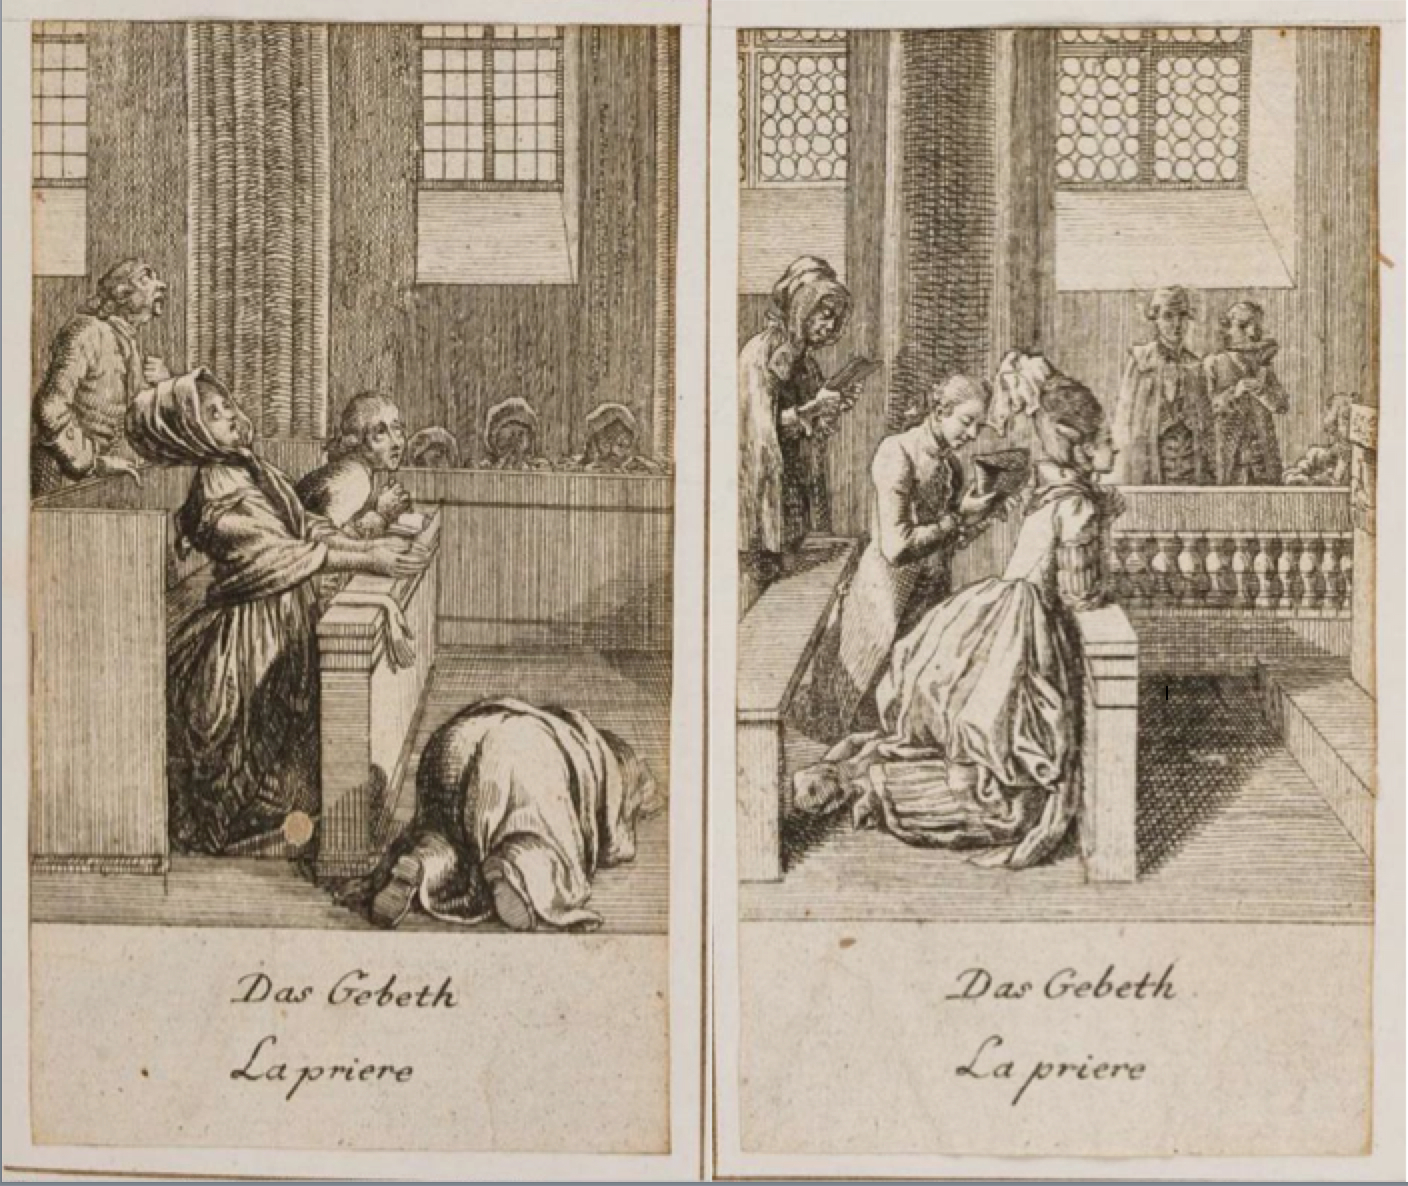 Das Gebeth – La priere (1778), Bild: Radierungen von Daniel Nikolaus Chodowiecki aus dem Göttinger Taschenkalender mit Erklärungen Georg Christoph Lichtenbergs 1778-1783..